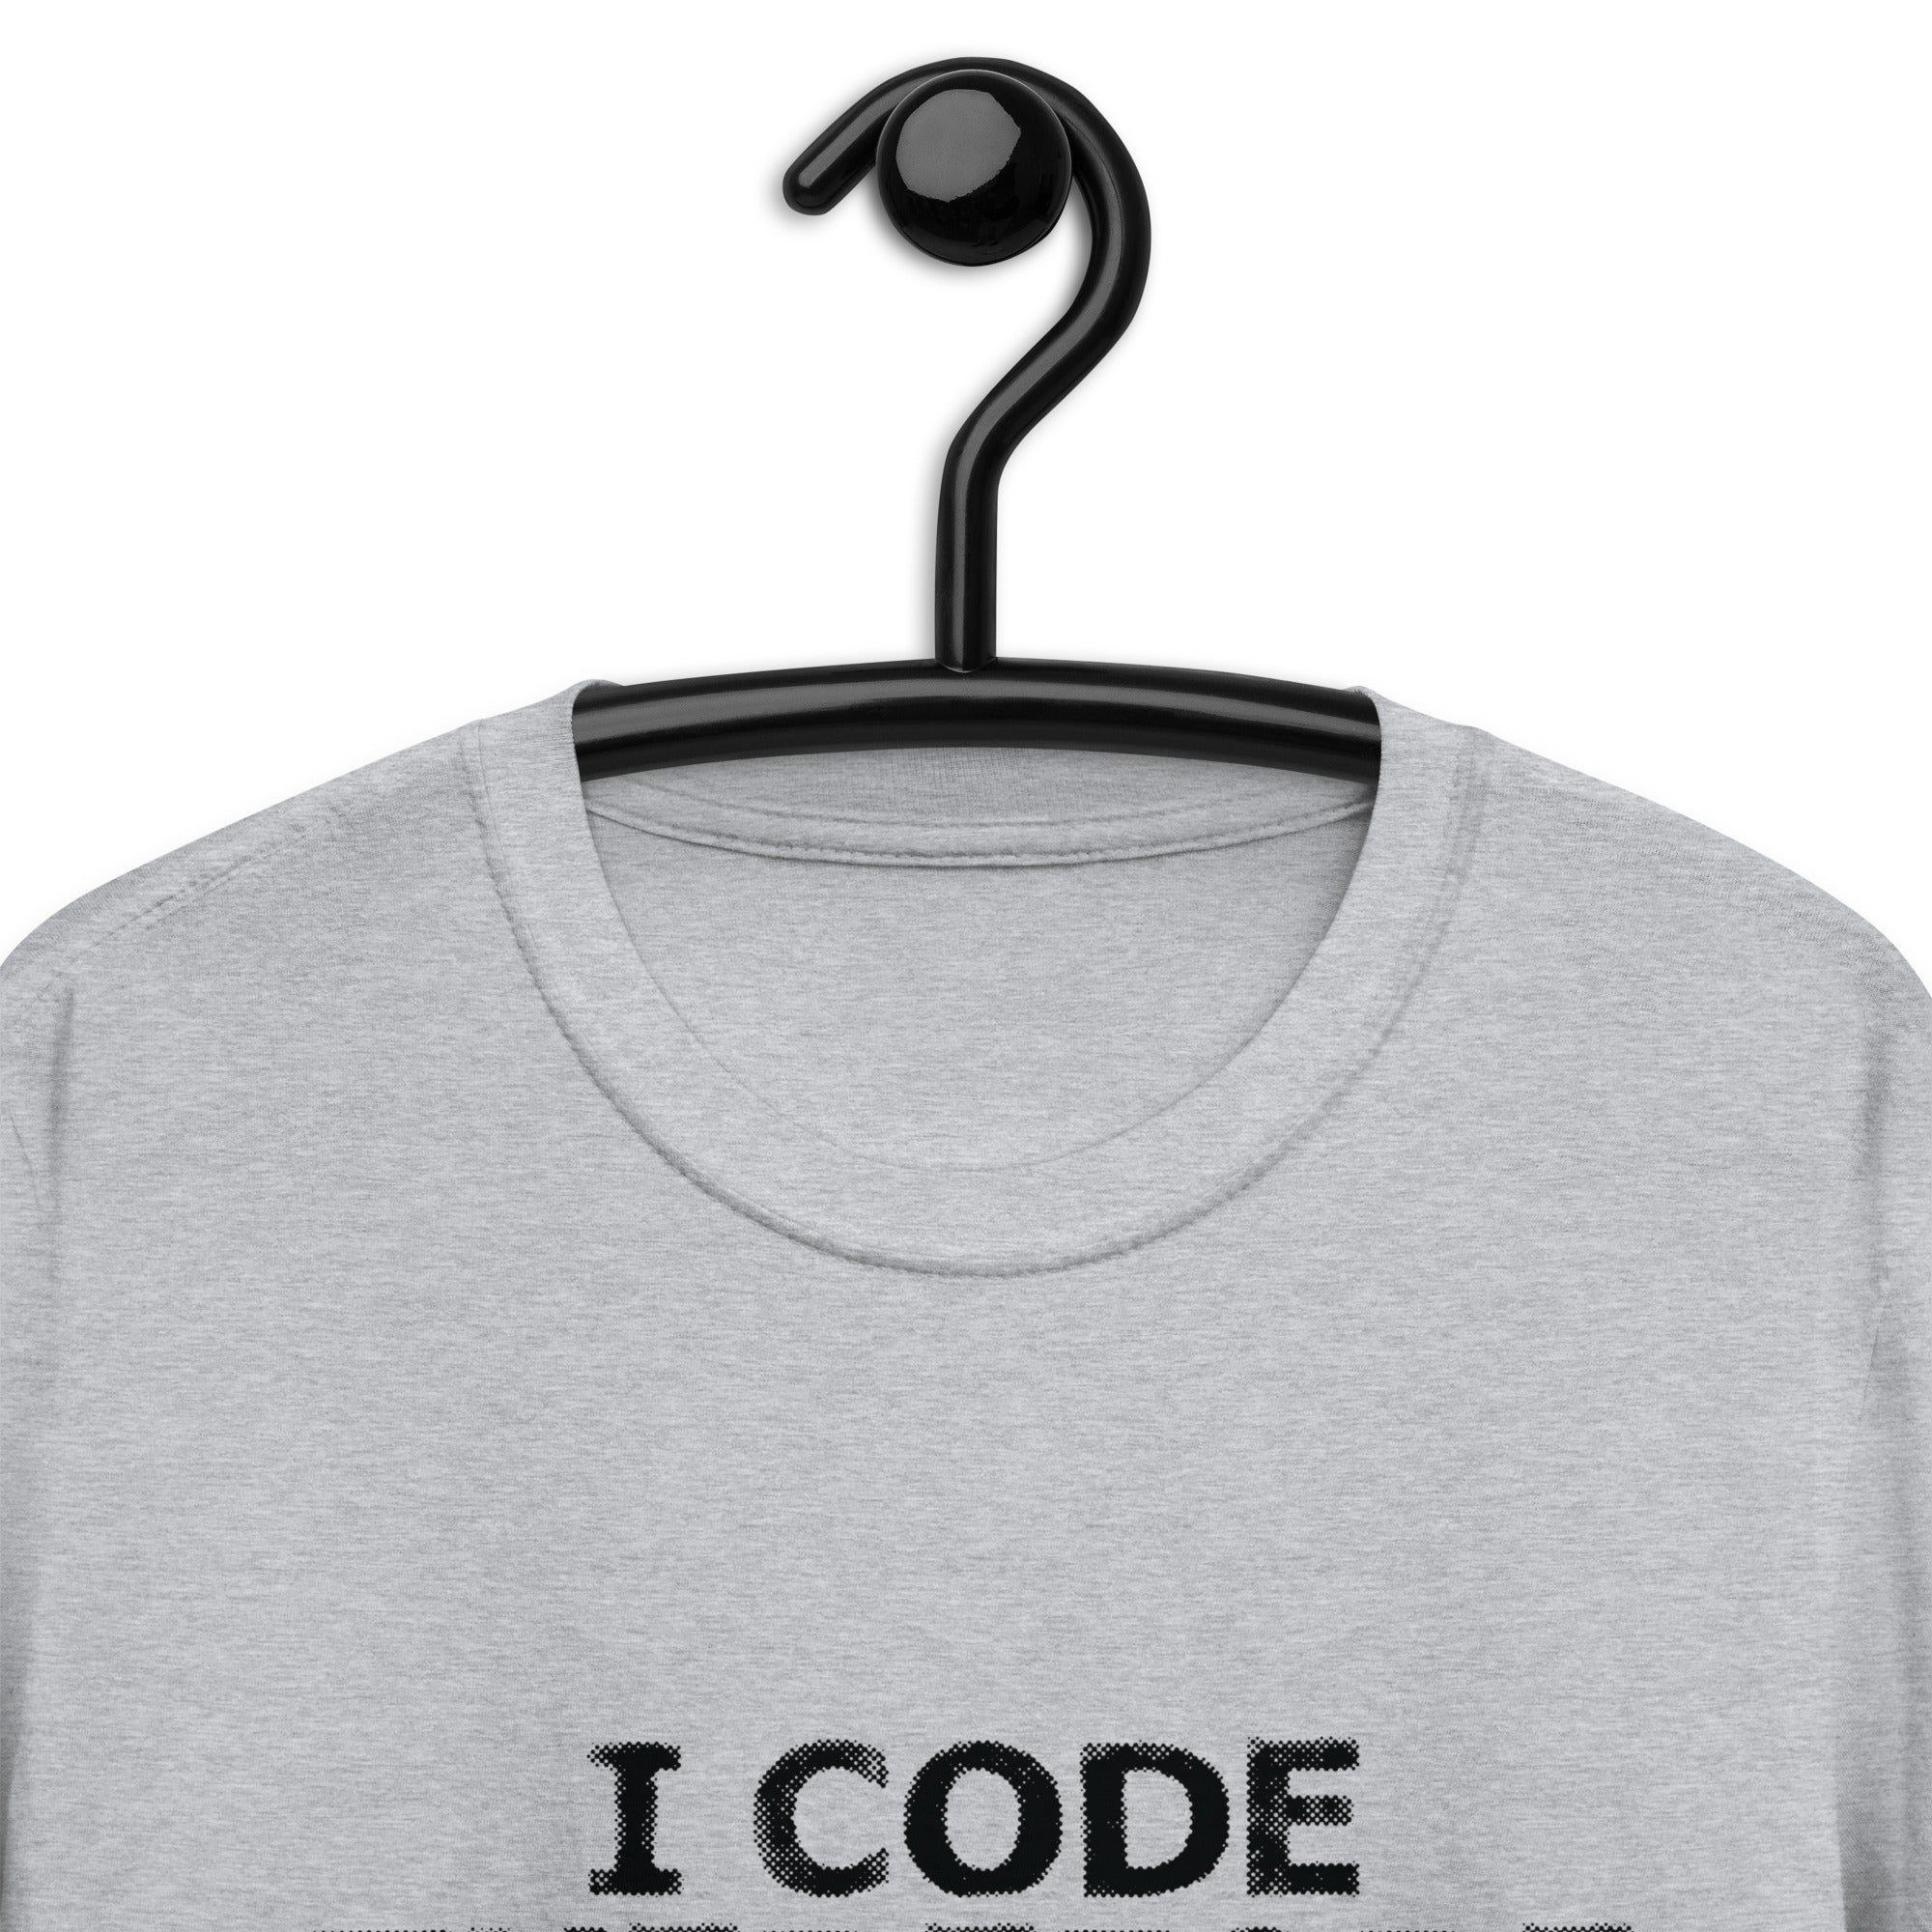 Short-Sleeve Unisex T-Shirt | I Code Therefore I Am